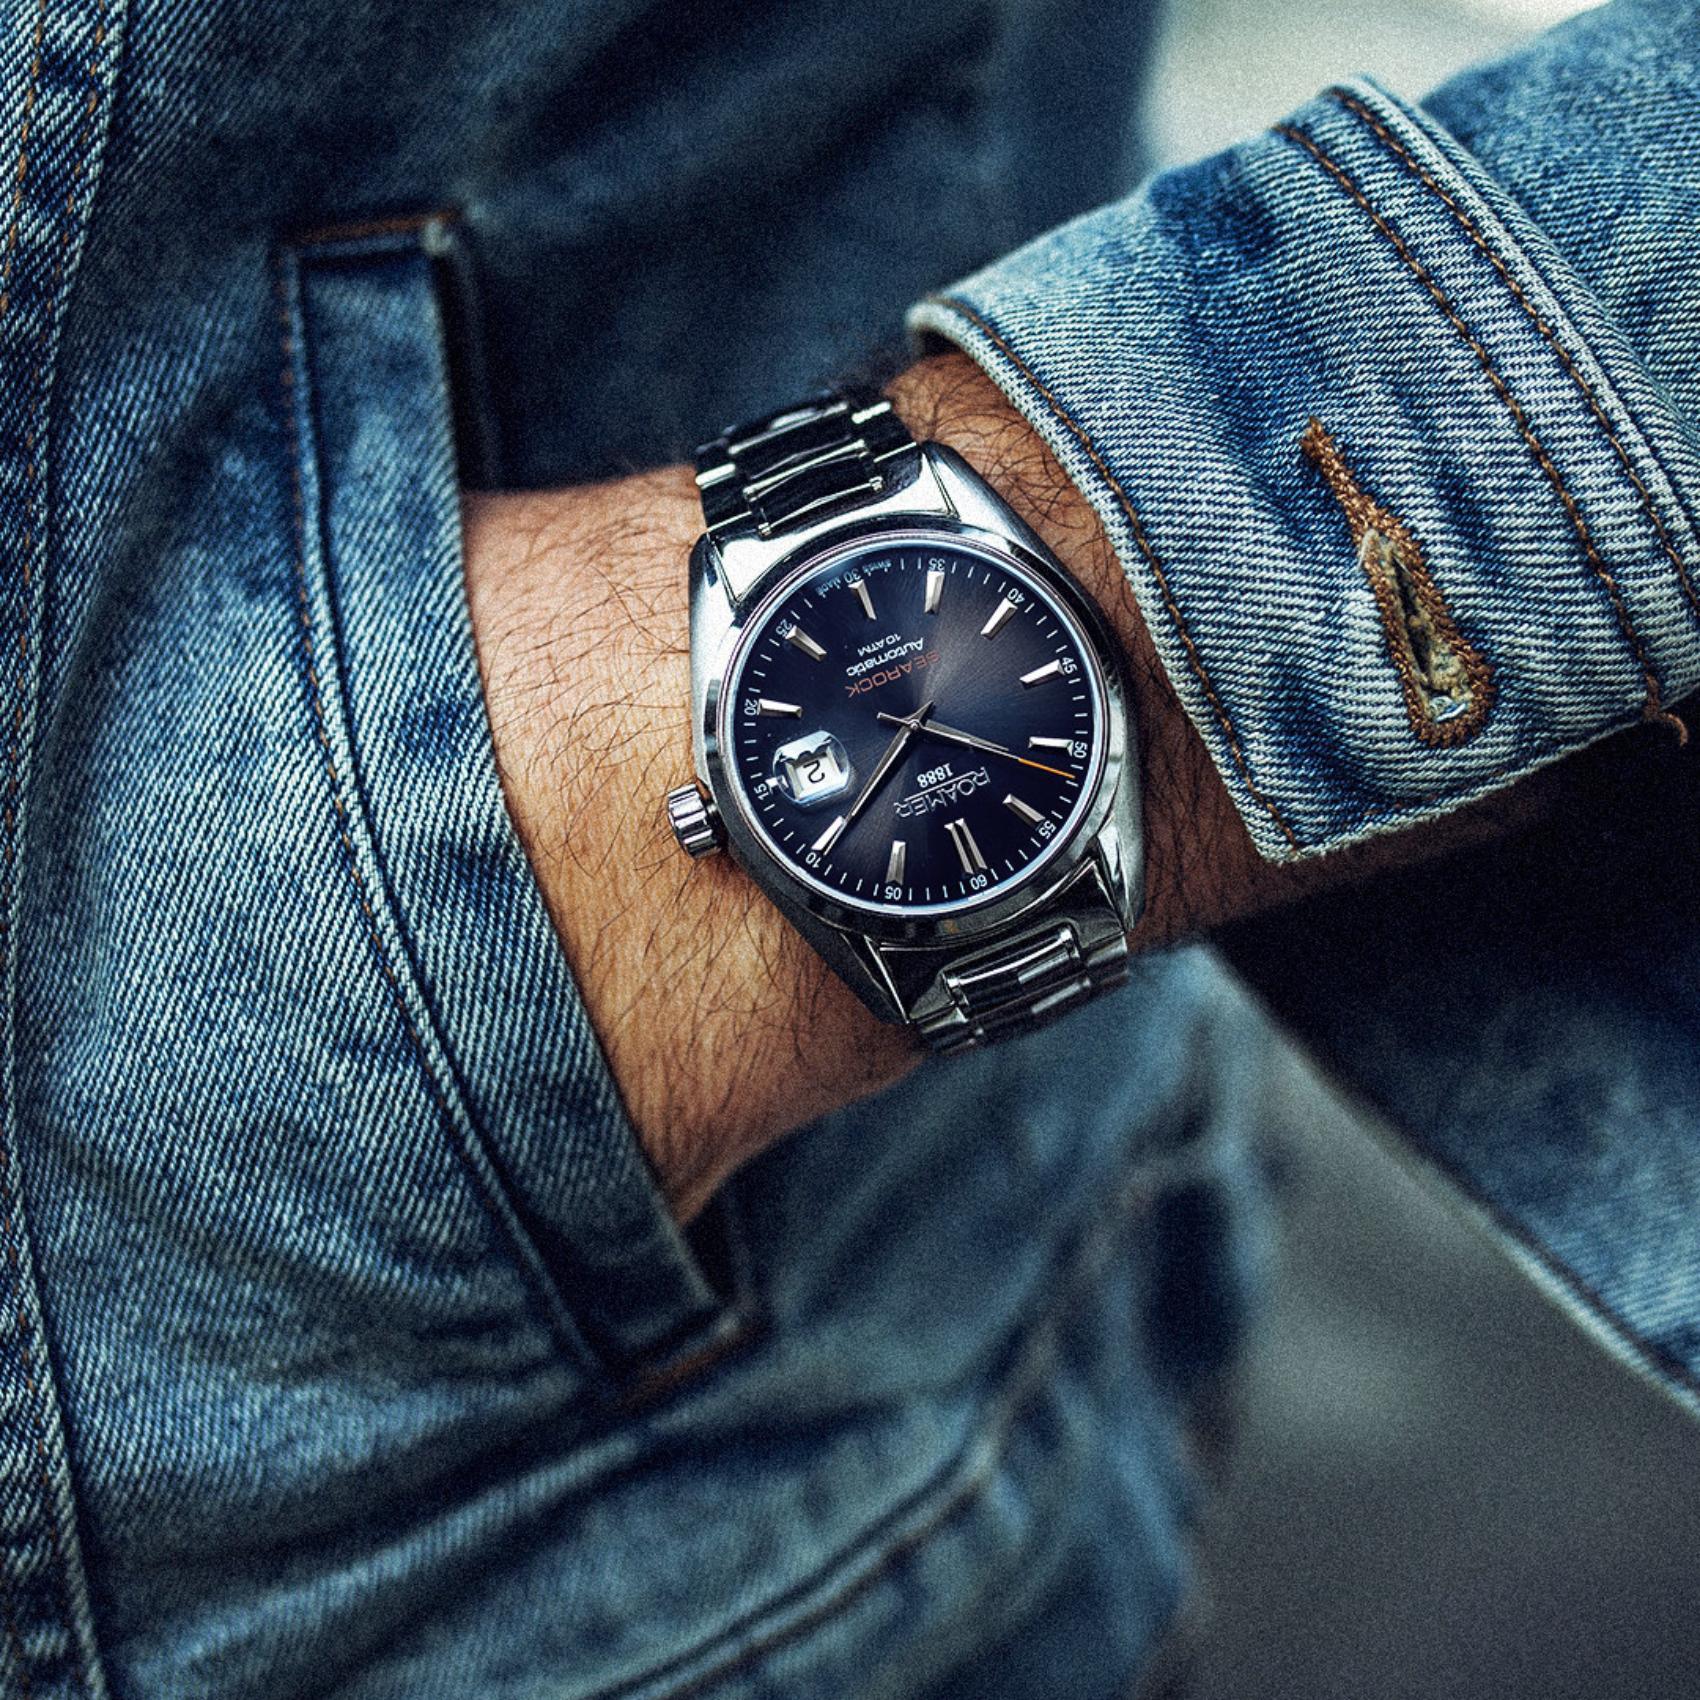 Αυτόματο ρολόι open back Roamer Searock Automatic 210633-41-45-20 με ασημί μπρασελέ, μπλε καντράν με ένδειξη ημερομηνίας και κάσα διαμέτρου 42mm.